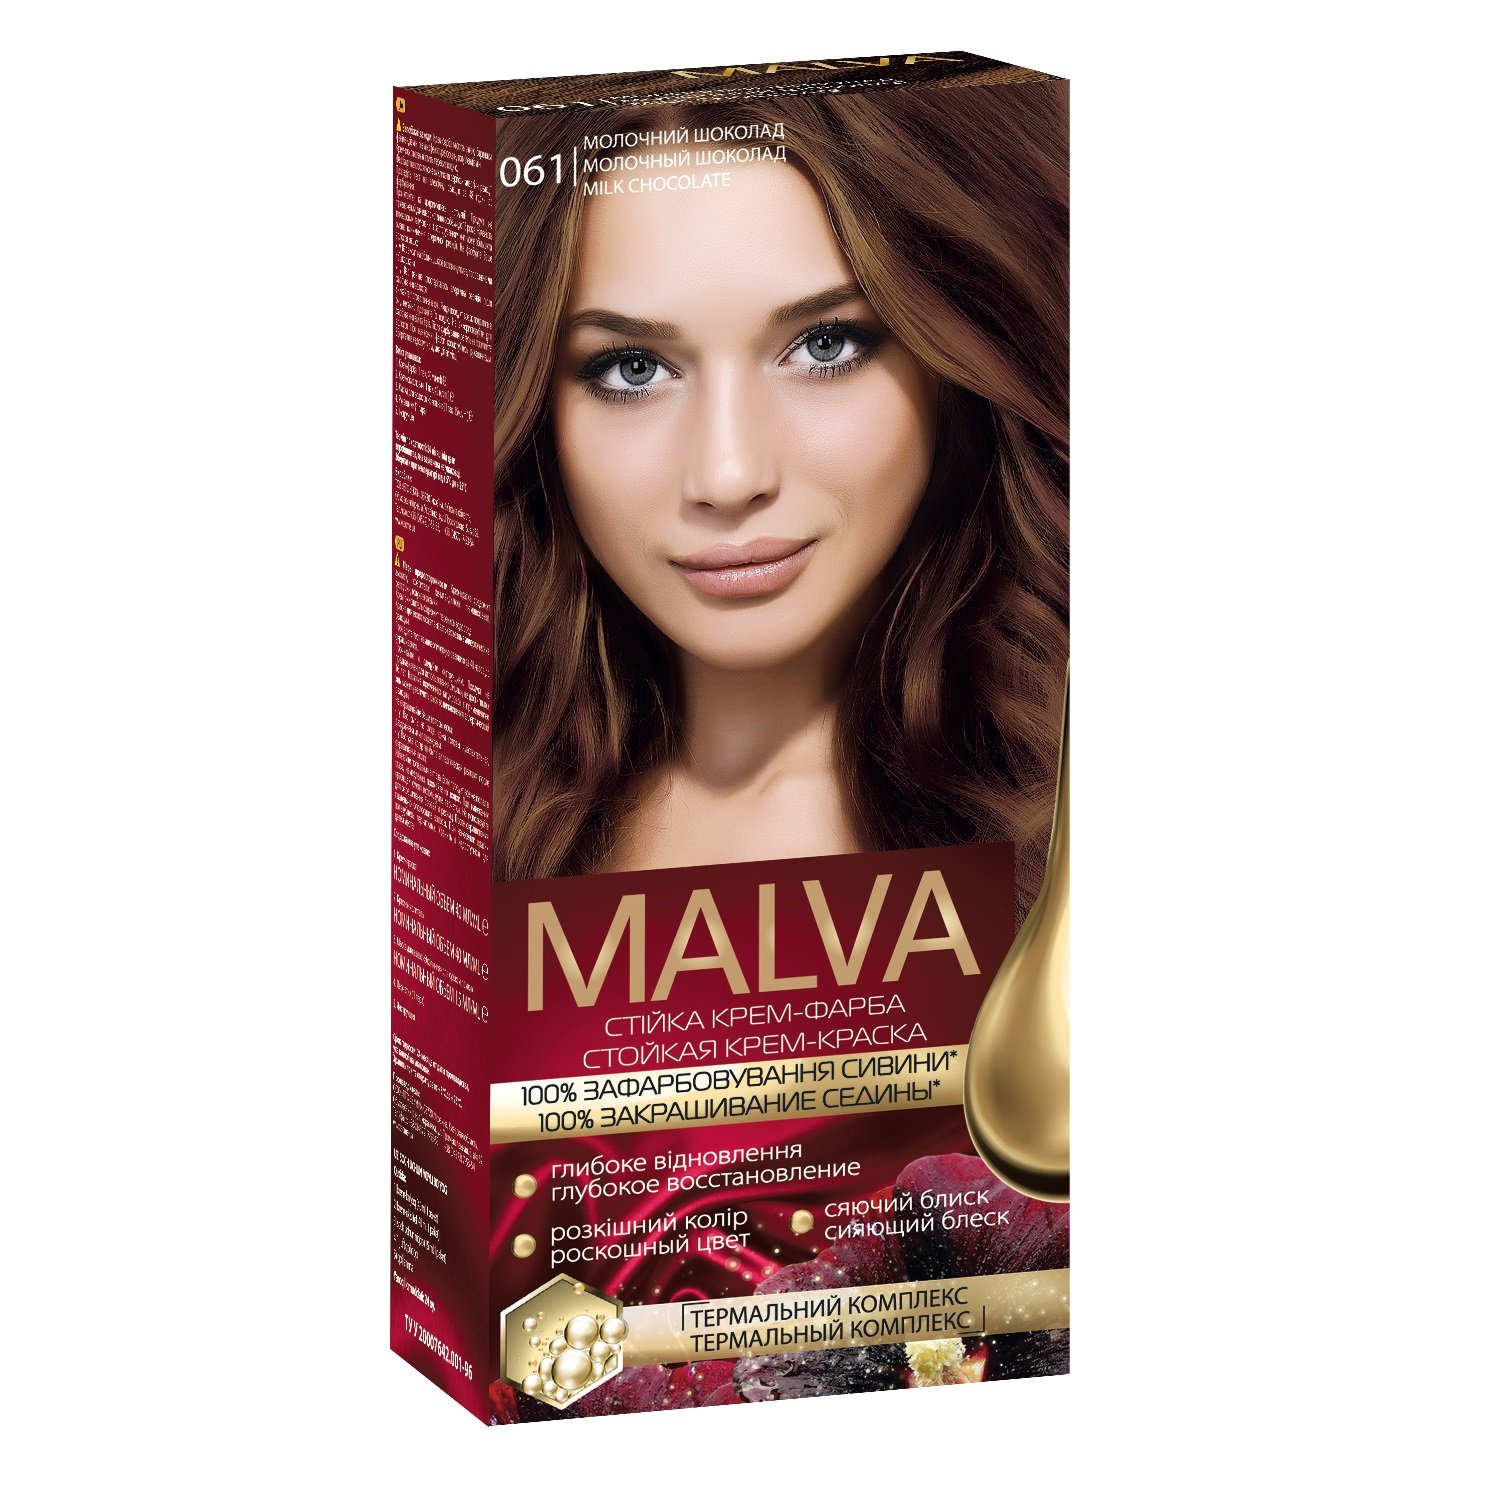 Крем-фарба для волосся Acme Color Malva, відтінок 061 (Молочний шоколад), 95 мл - фото 1